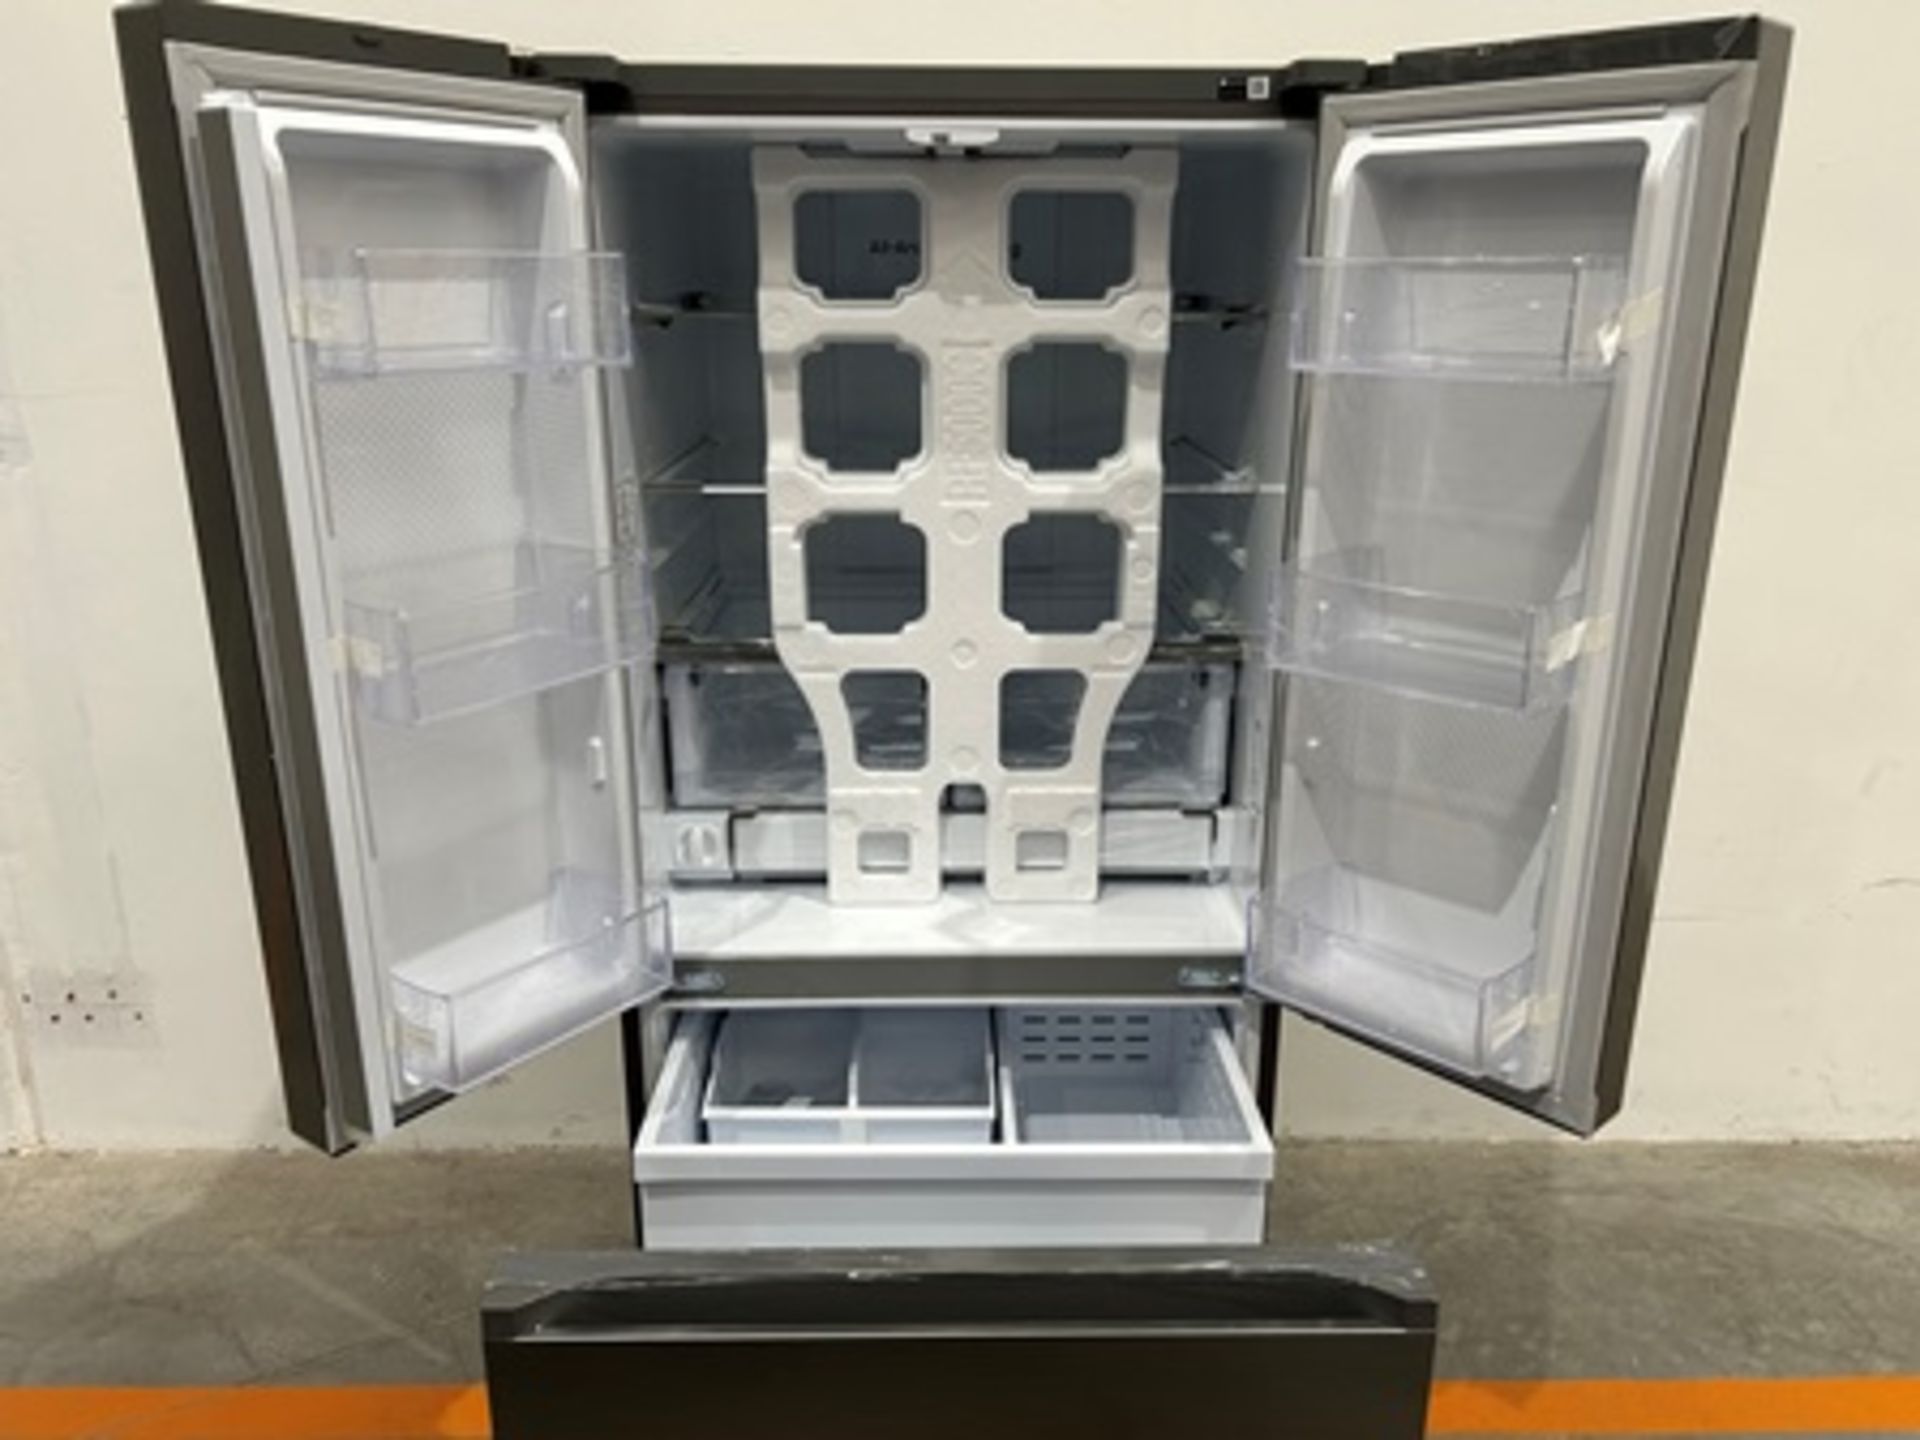 Refrigerador Marca SAMSUNG, Modelo RF25C5151S9, Serie 00679X, Color GRIS (equipo de devolución) - Image 4 of 5